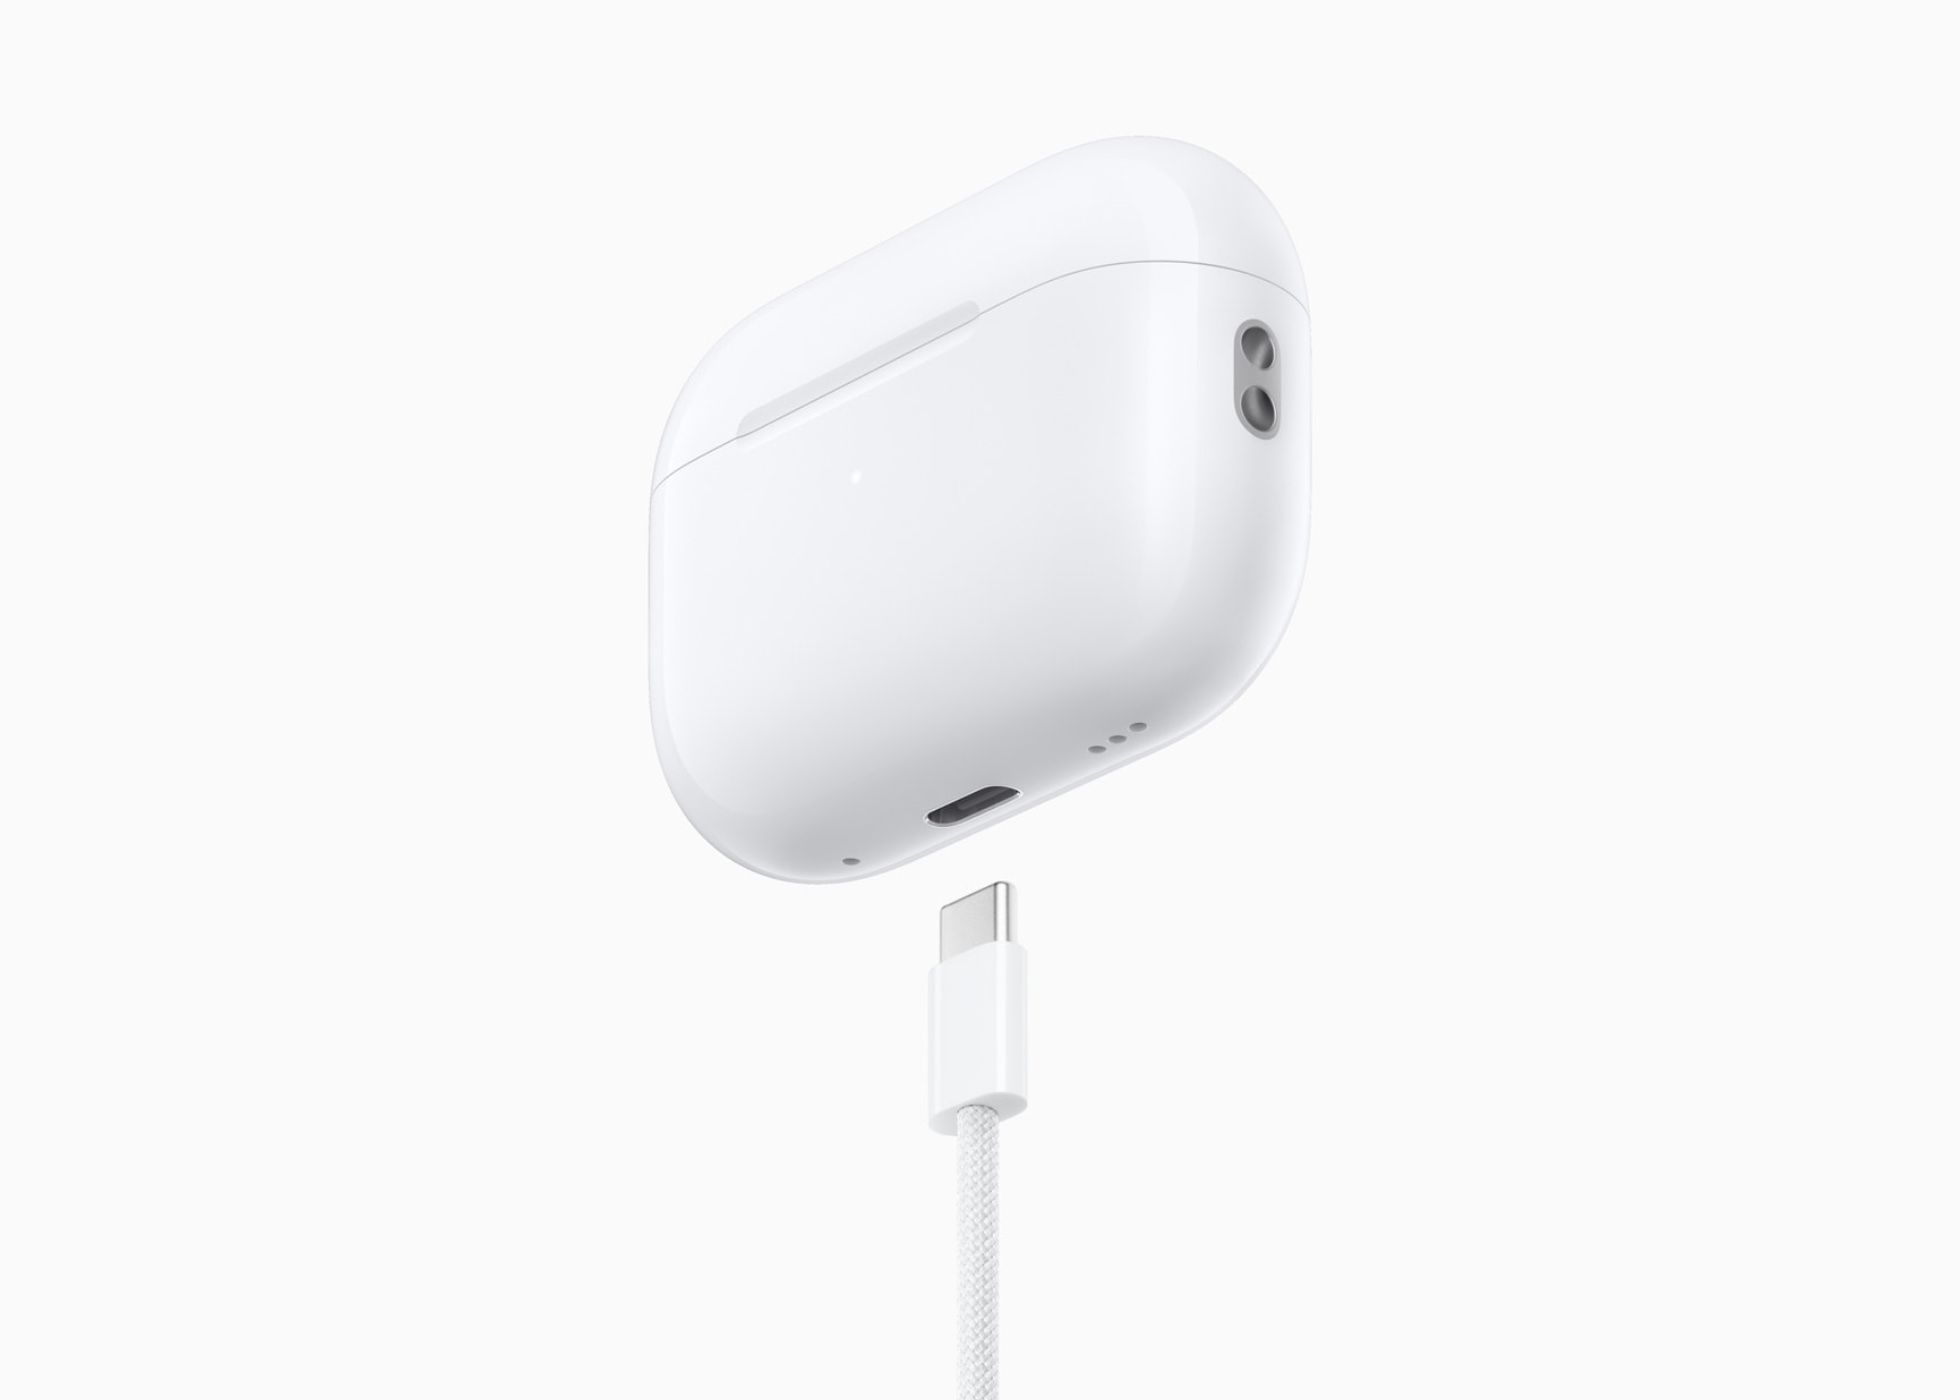 Apple AirPods Pro: Novo modelo com USB-C apresentado oficialmente